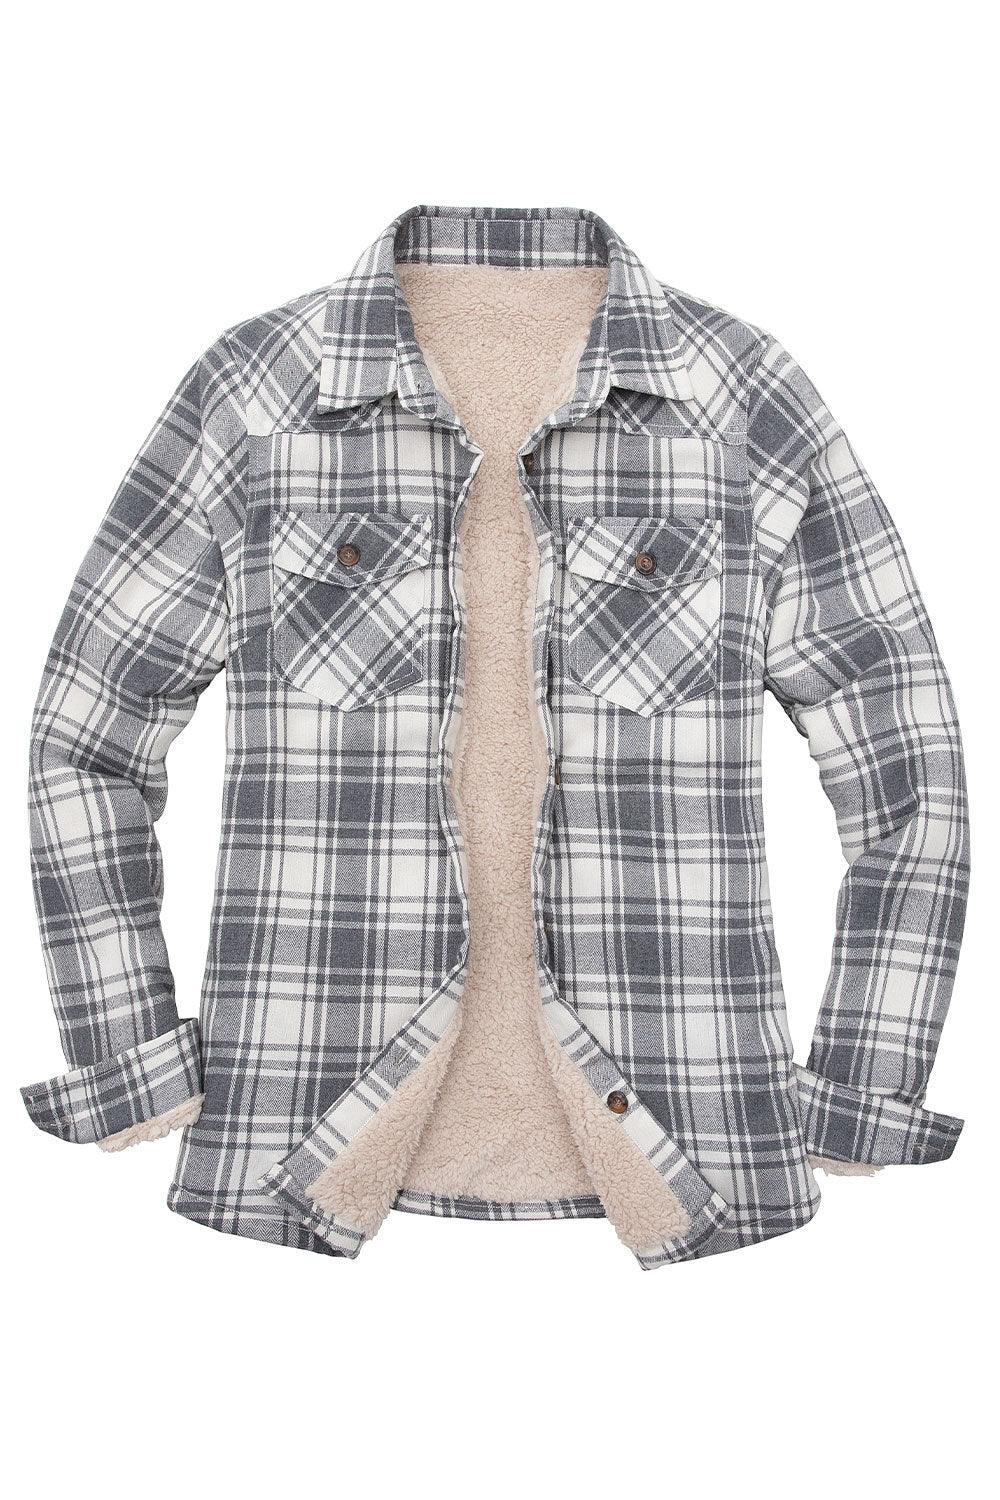 https://www.flannelgo.com/cdn/shop/files/women-s-sherpa-lined-flannel-shirt-jacketbutton-down-flannel-shacket-flannelgo-7.jpg?v=1704795024